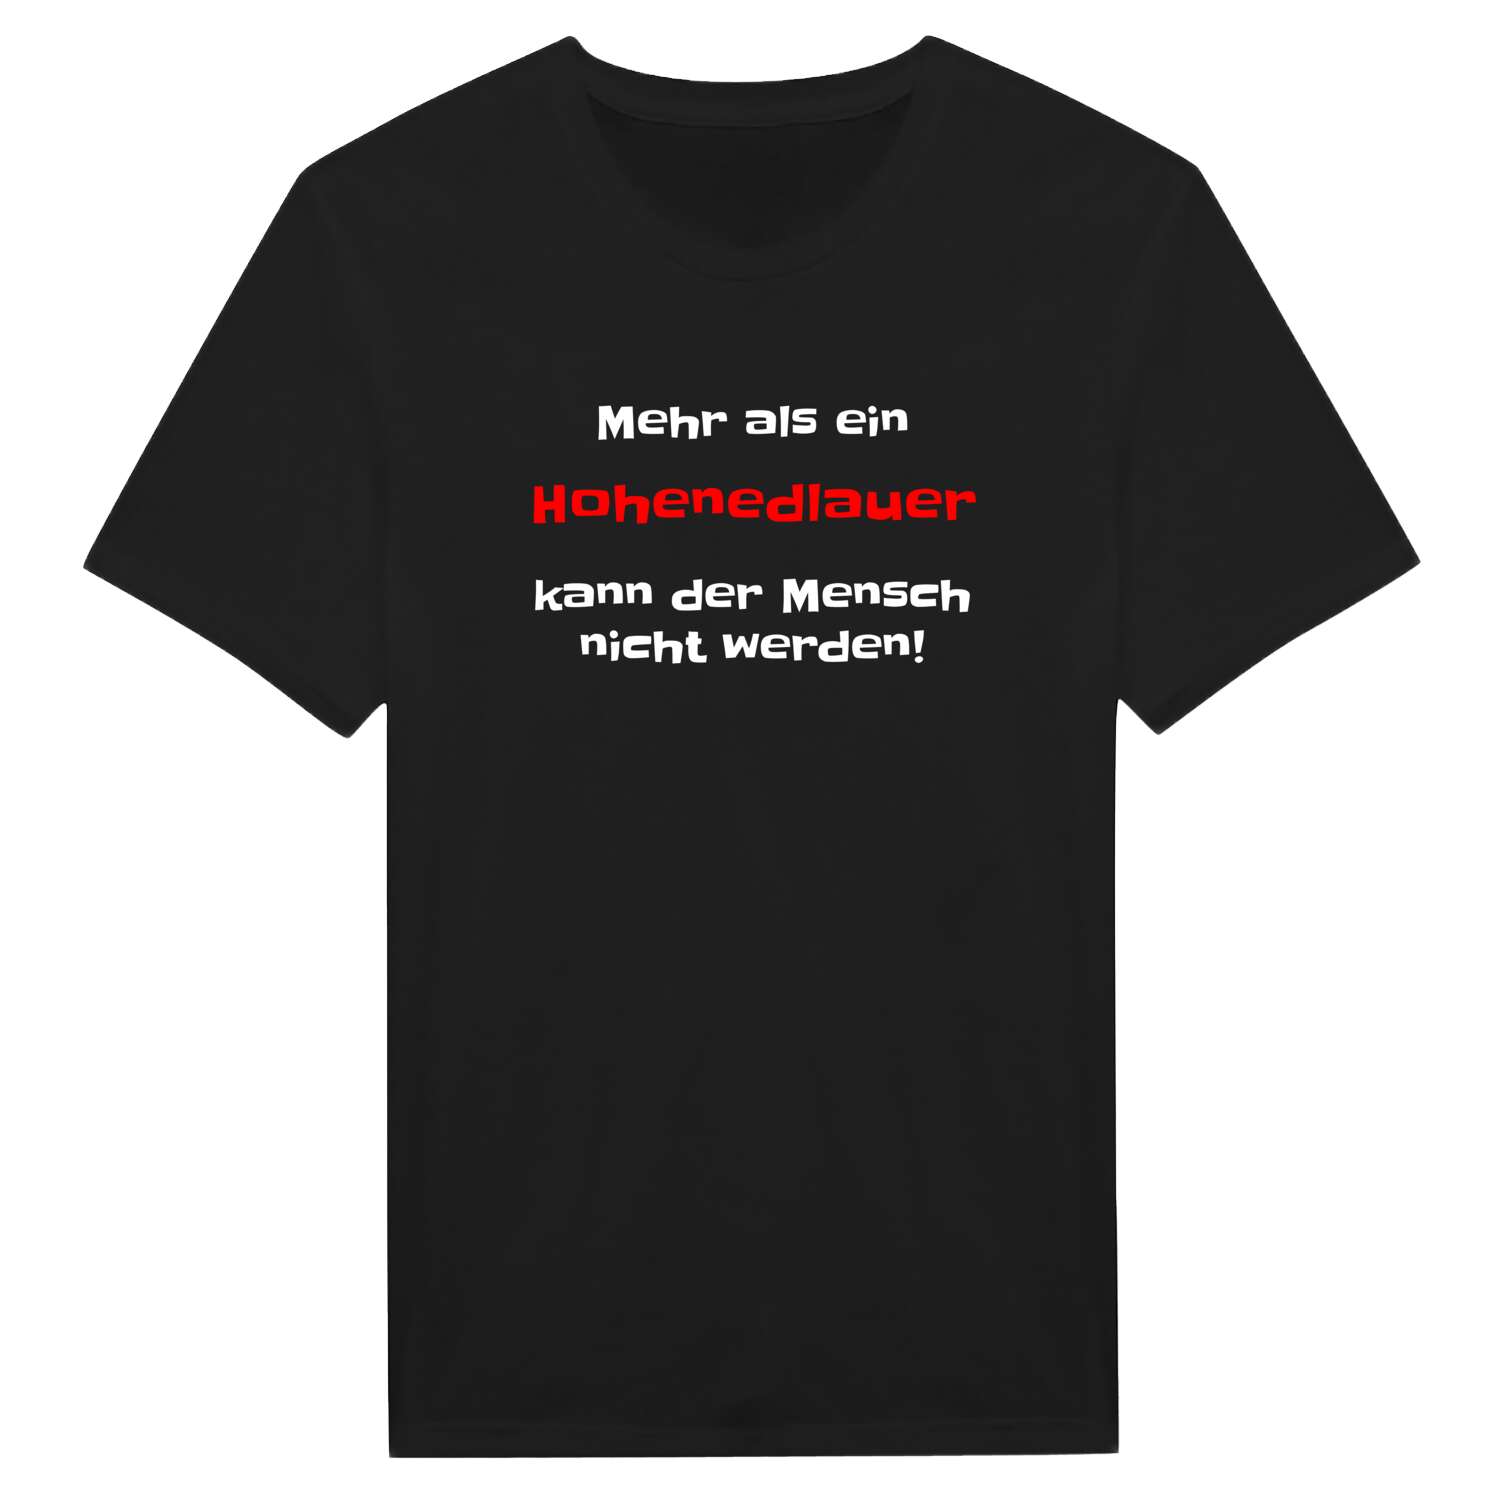 Hohenedlau T-Shirt »Mehr als ein«